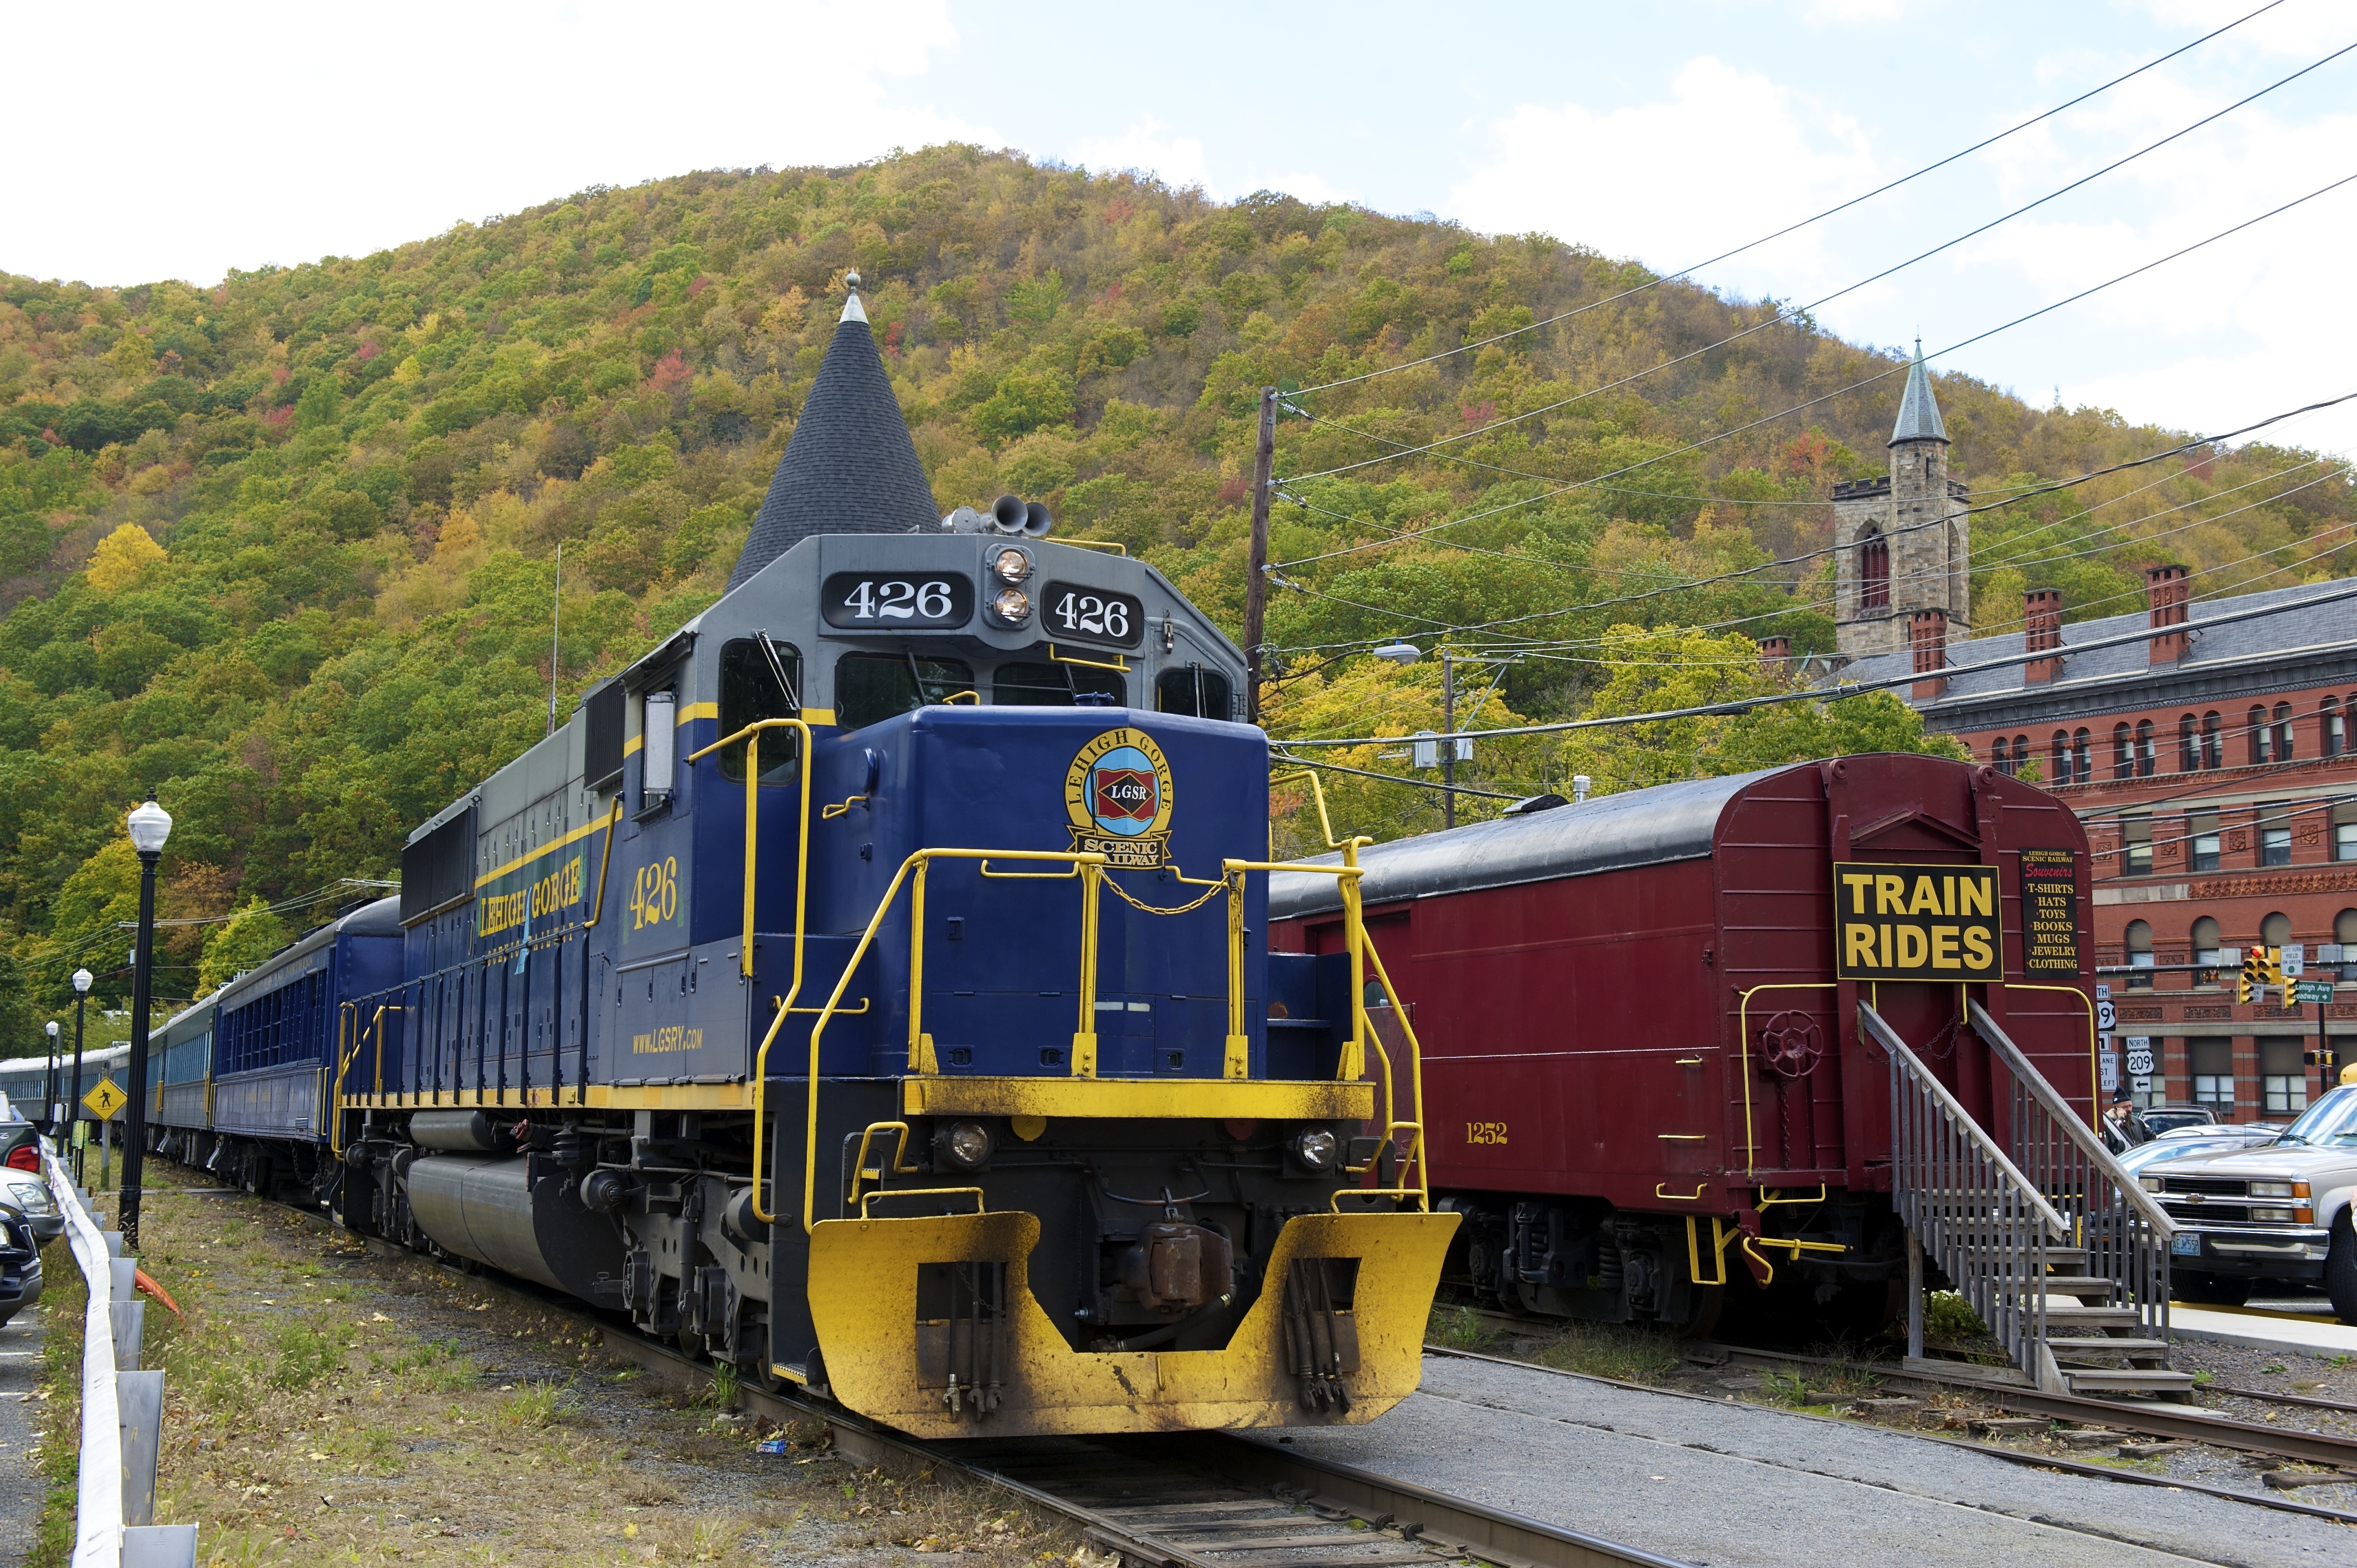 Scenic Fall Foliage Train Rides in the Poconos